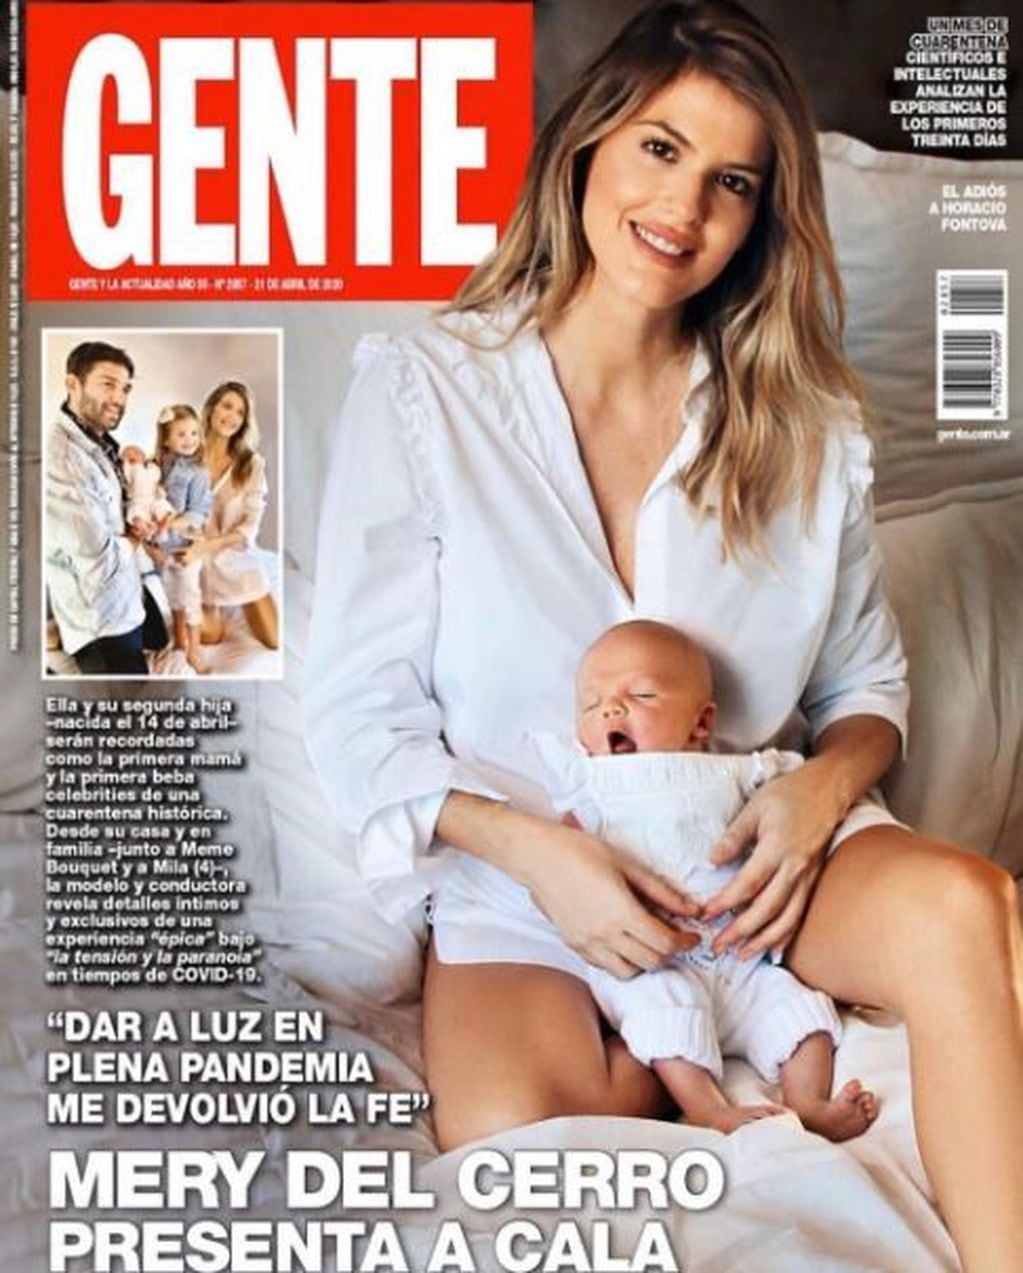 Mery del Cerro realizó una tapa de revista con su beba recién nacida y generó polémica. (GENTE)